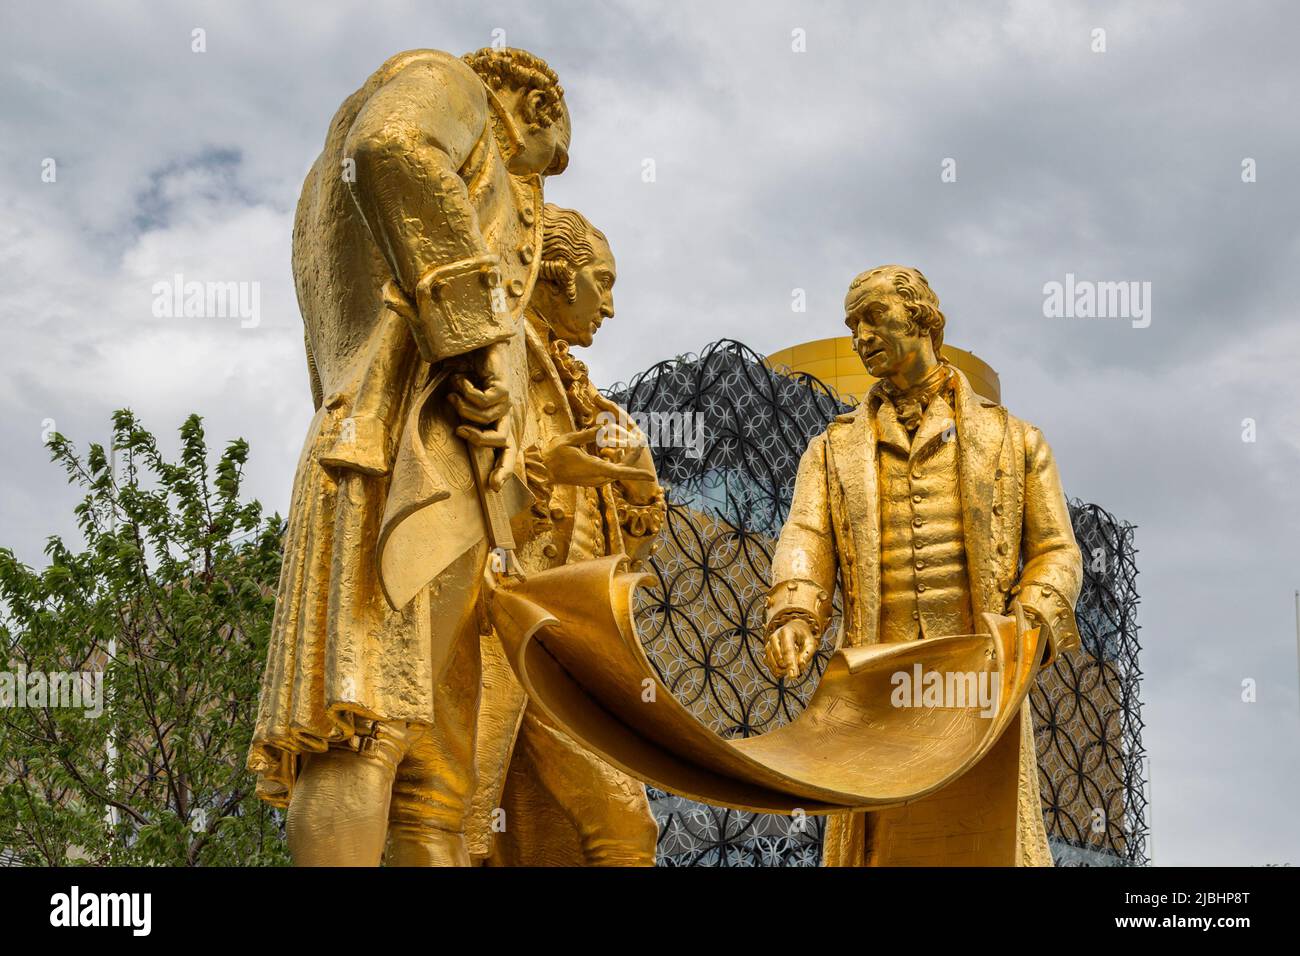 Matthew Boulton, James Watt und William Murdoch sind in Boulton, Watt und Murdoch dargestellt, einer vergoldeten Bronzestatue auf dem Centenary Square, Birmingham, Großbritannien. Stockfoto